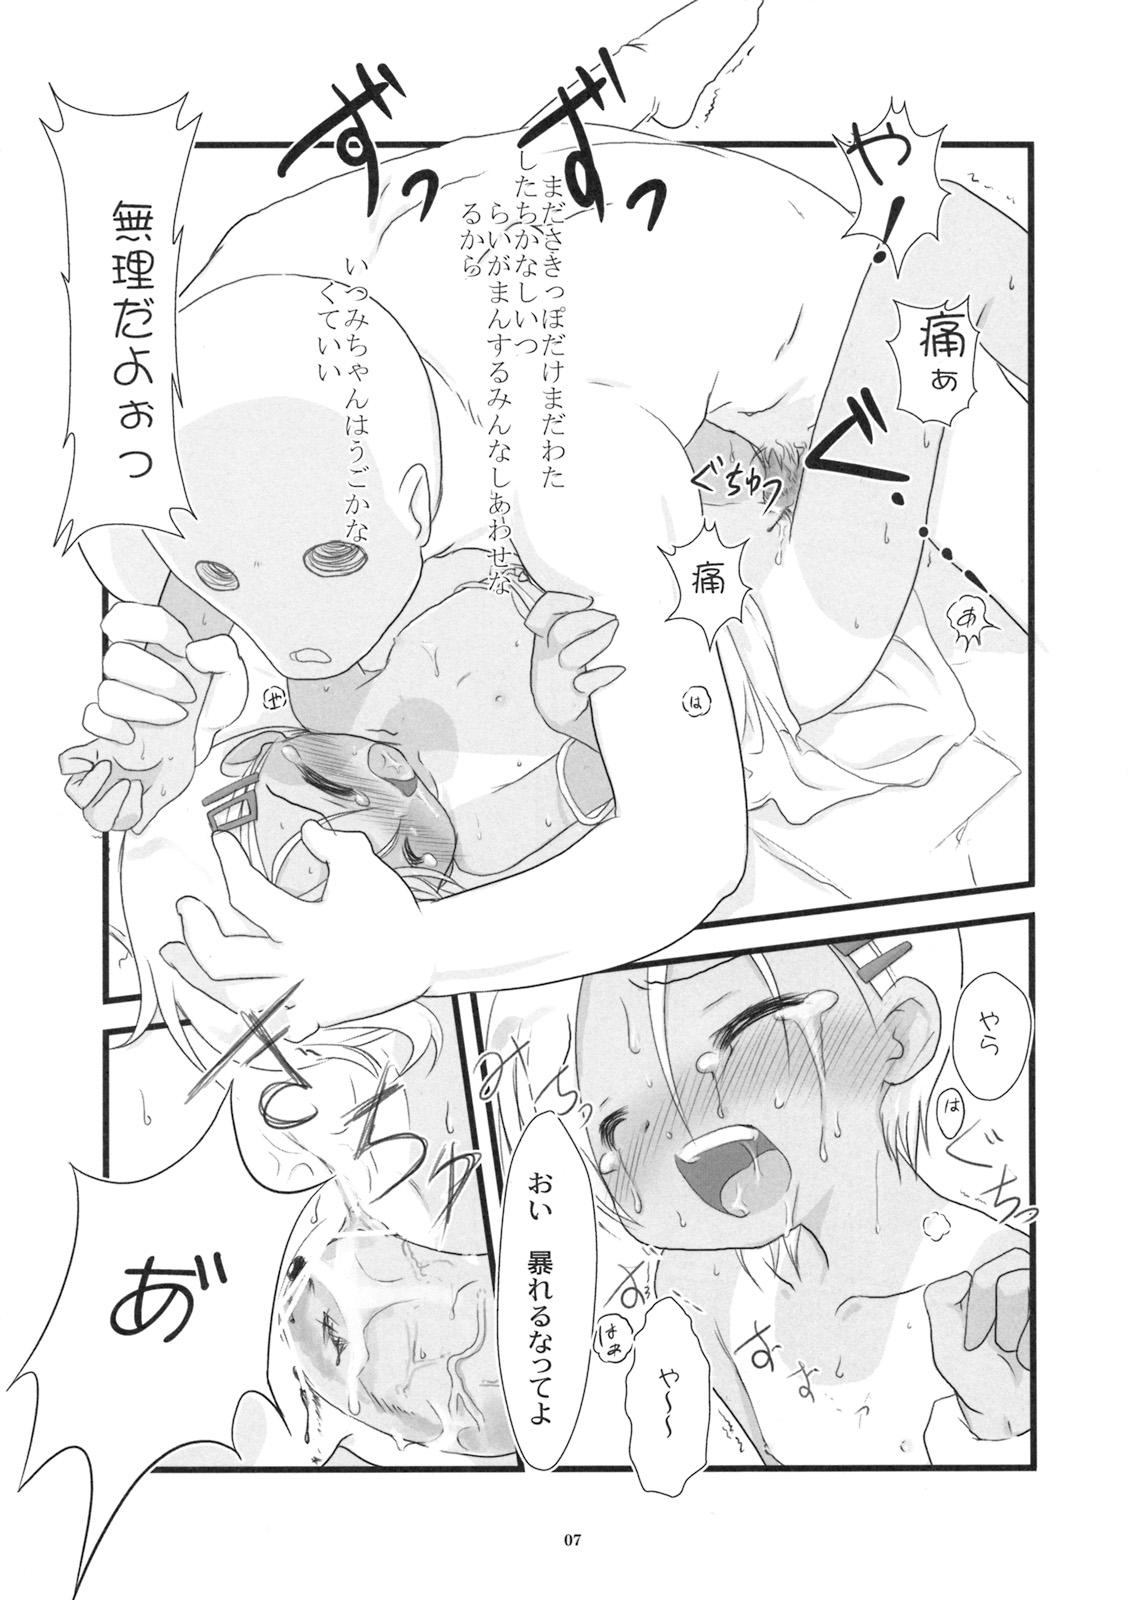 Flogging Chiisai Ko no Eros no Hon Flogging - Page 6